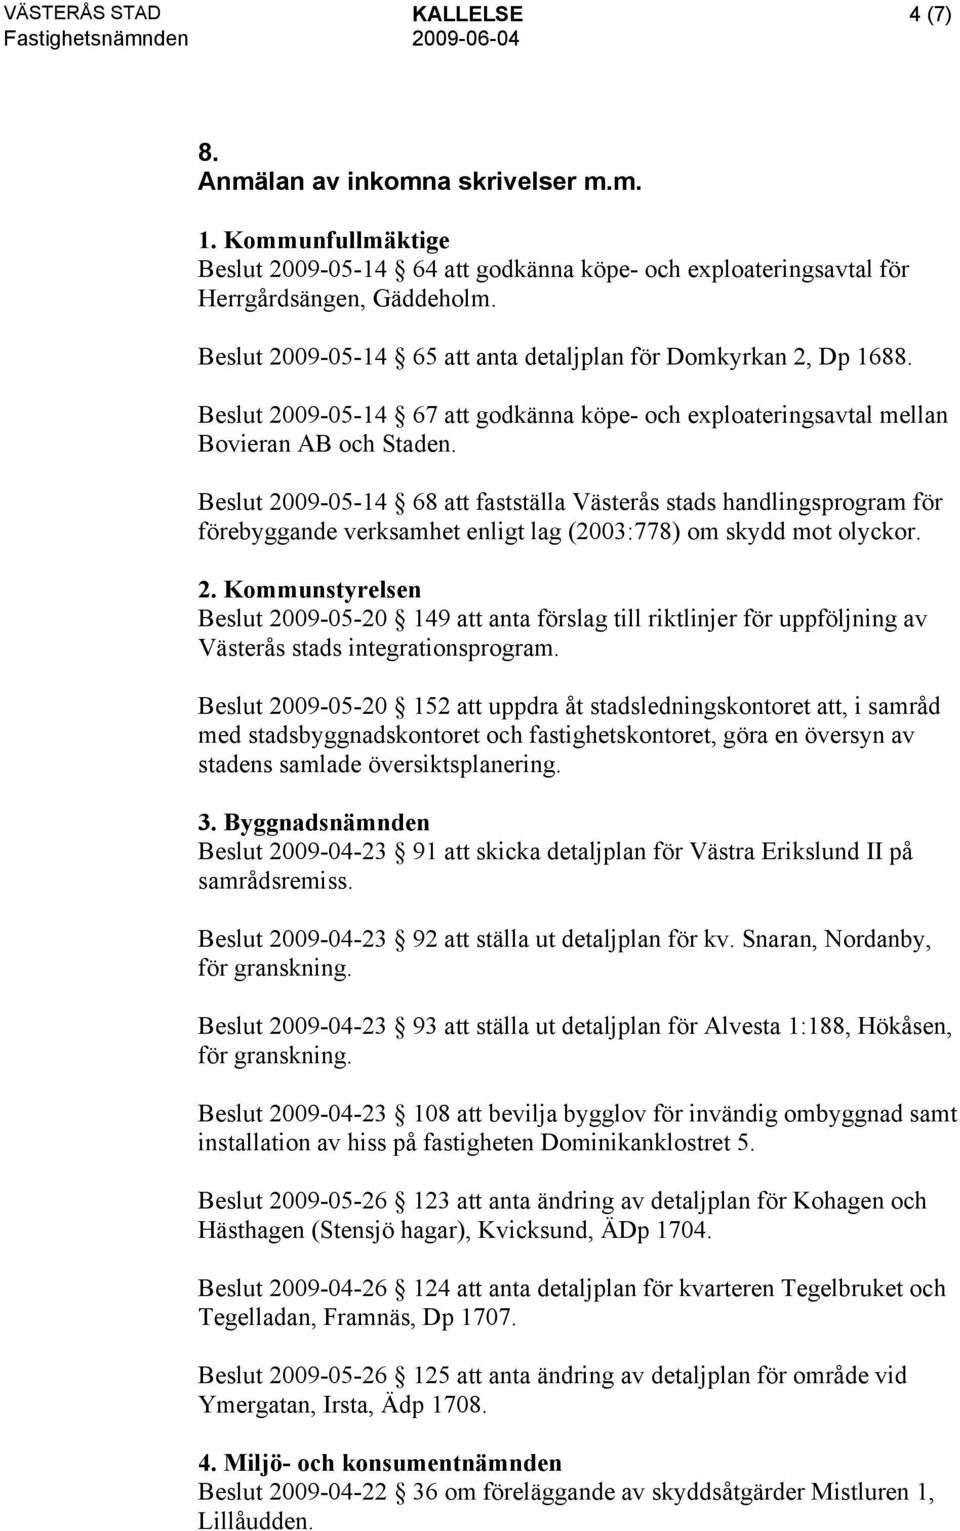 Beslut 2009-05-14 68 att fastställa Västerås stads handlingsprogram för förebyggande verksamhet enligt lag (2003:778) om skydd mot olyckor. 2. Kommunstyrelsen Beslut 2009-05-20 149 att anta förslag till riktlinjer för uppföljning av Västerås stads integrationsprogram.